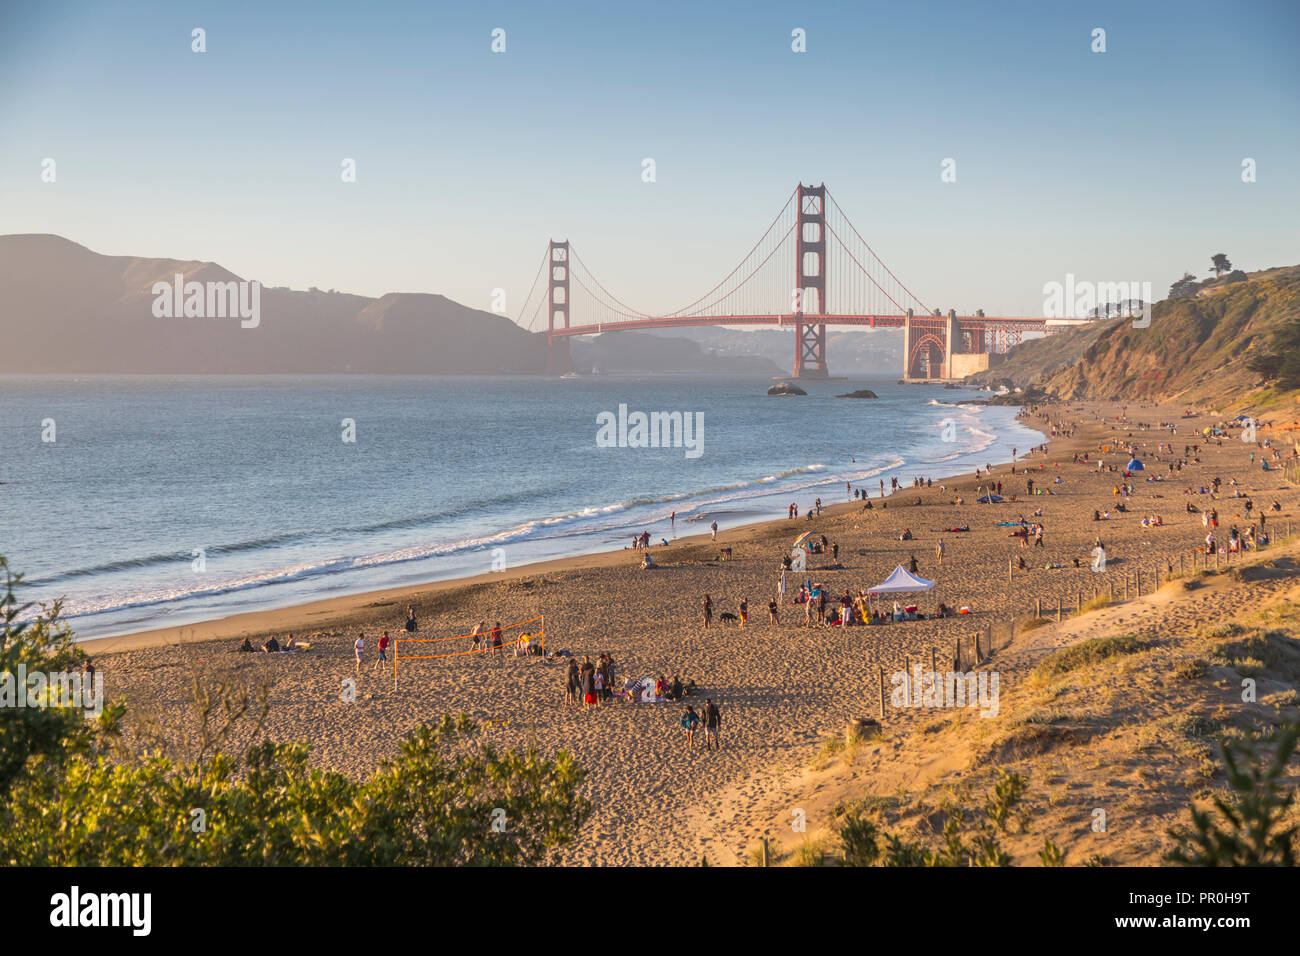 Blick auf die Golden Gate Bridge von Baker Strand bei Sonnenuntergang, South Bay, San Francisco, Kalifornien, Vereinigte Staaten von Amerika, Nordamerika Stockfoto